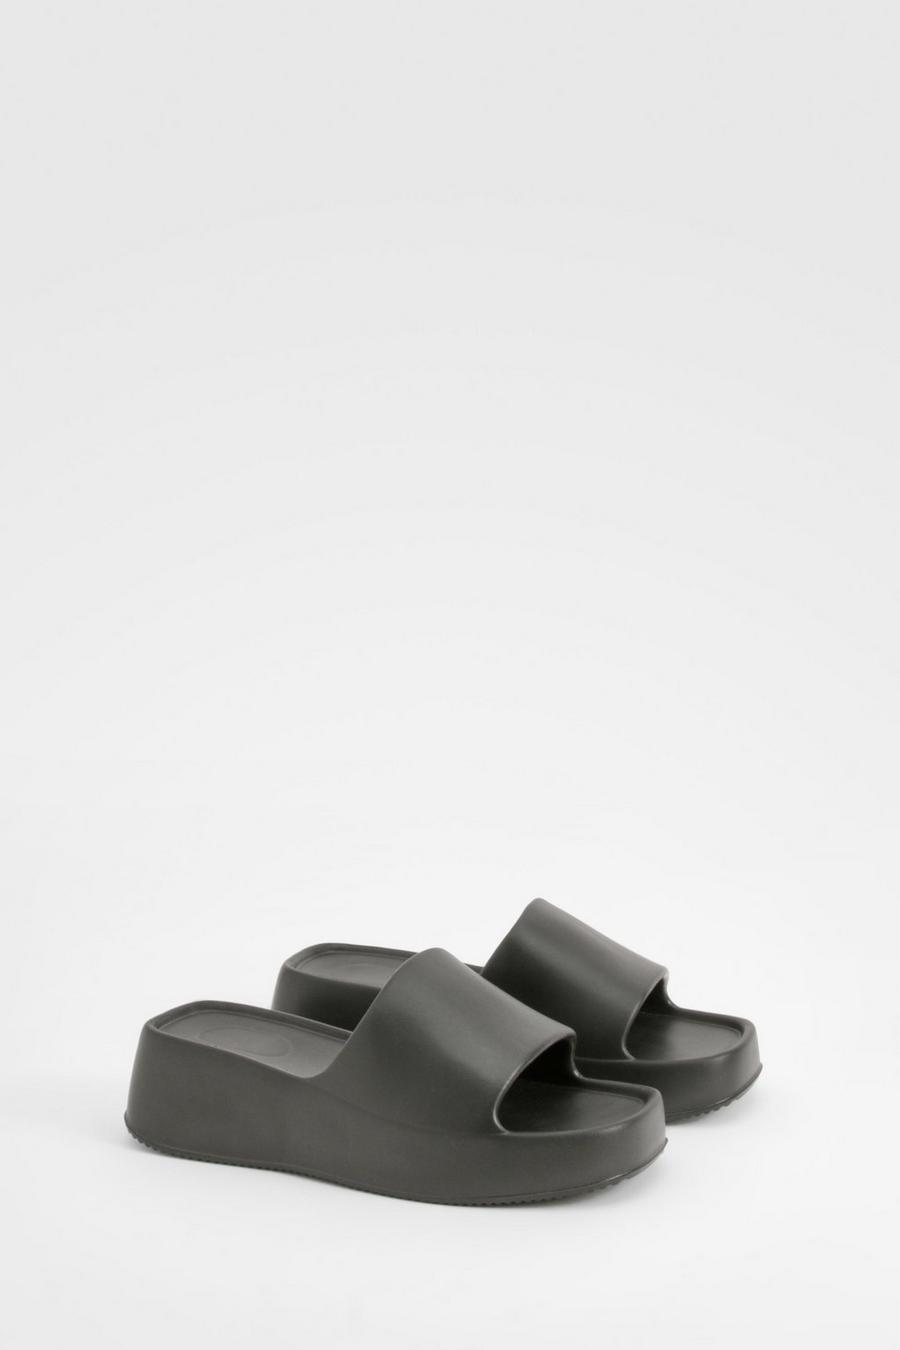 Sandalias gruesas con plataforma, Black